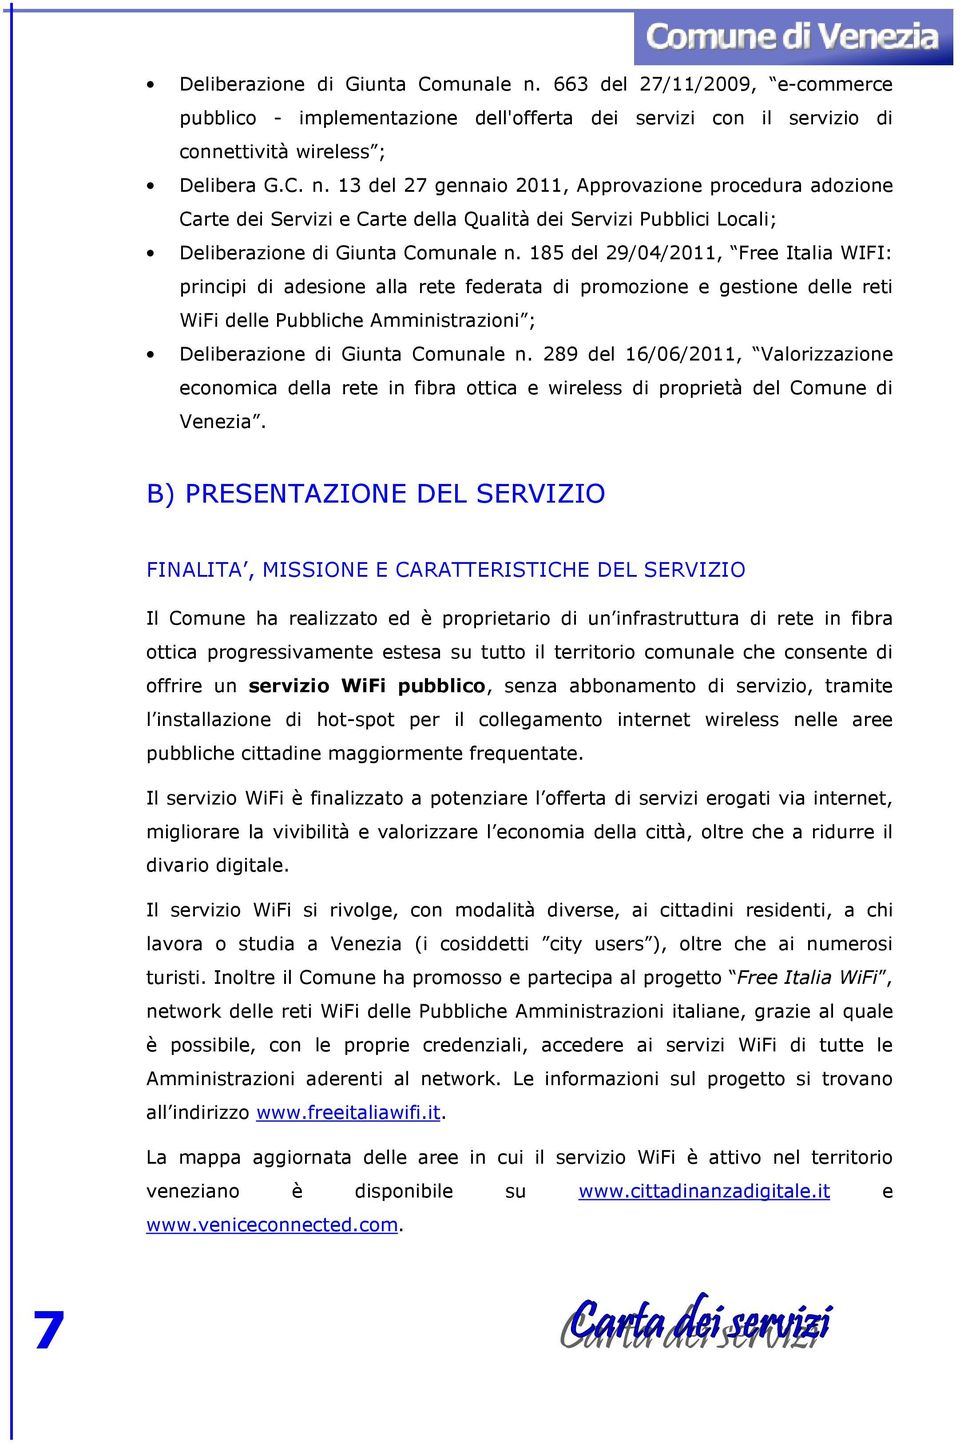 289 del 16/06/2011, Valorizzazione economica della rete in fibra ottica e wireless di proprietà del Comune di Venezia.